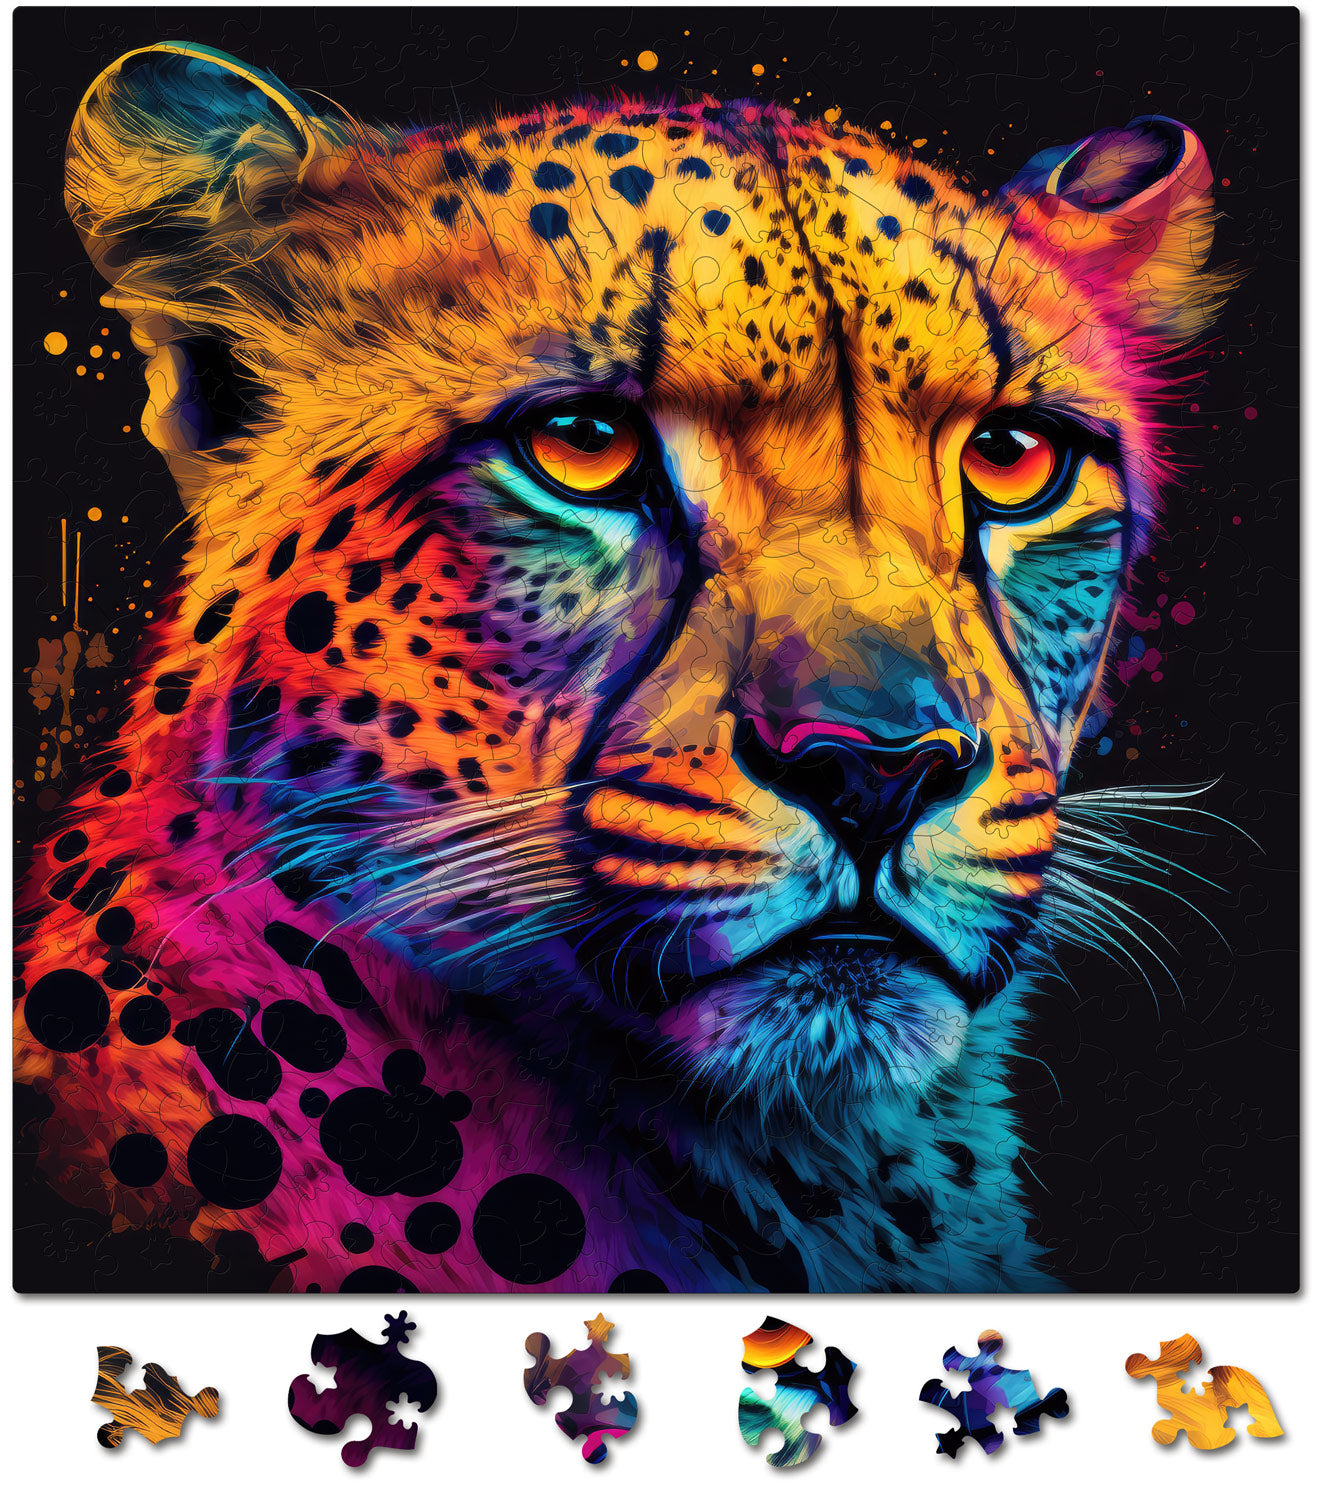 Puzzle cu Animale - Ghepard - 200 piese - 30 x 30 cm